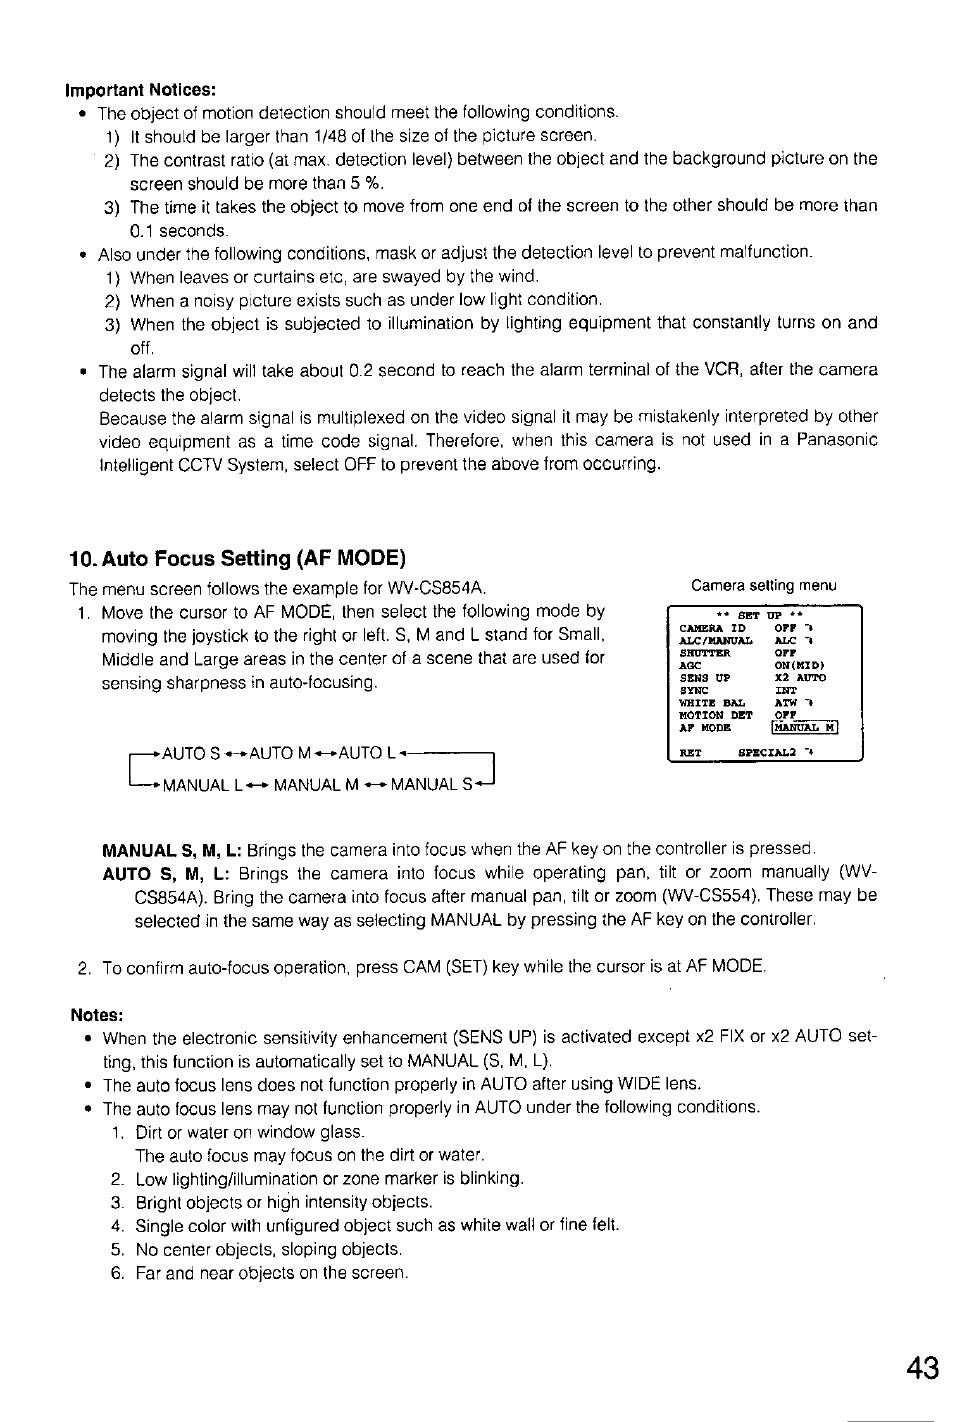 Important notices, Auto focus setting (af mode), Notes | Panasonic WV-CS554 Manuel d'utilisation | Page 43 / 120